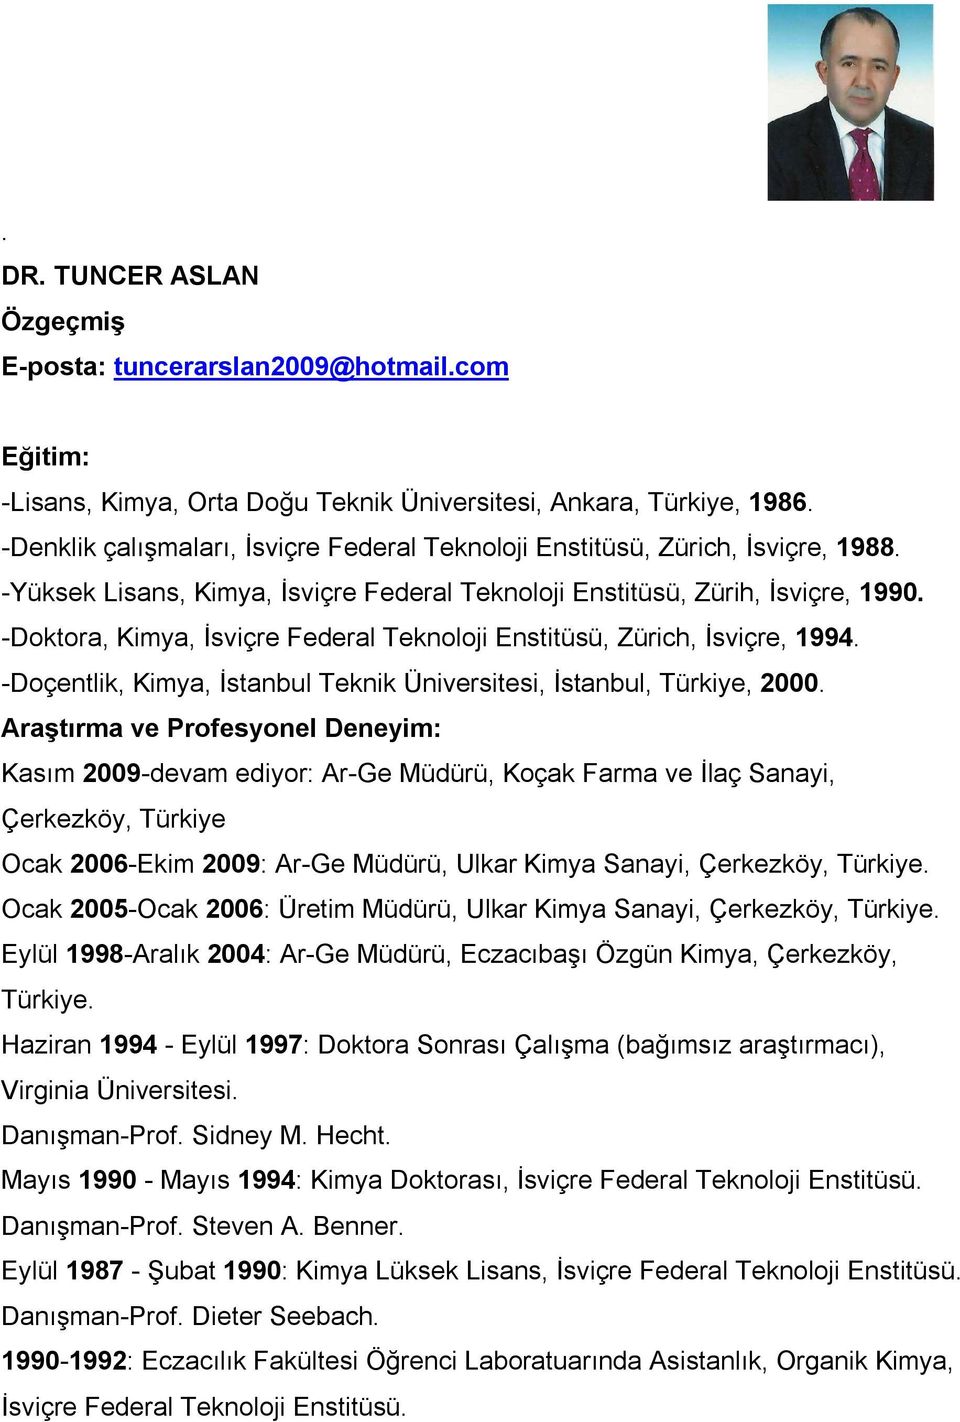 -Doktora, Kimya, İsviçre Federal Teknoloji Enstitüsü, Zürich, İsviçre, 1994. -Doçentlik, Kimya, İstanbul Teknik Üniversitesi, İstanbul, Türkiye, 2000.